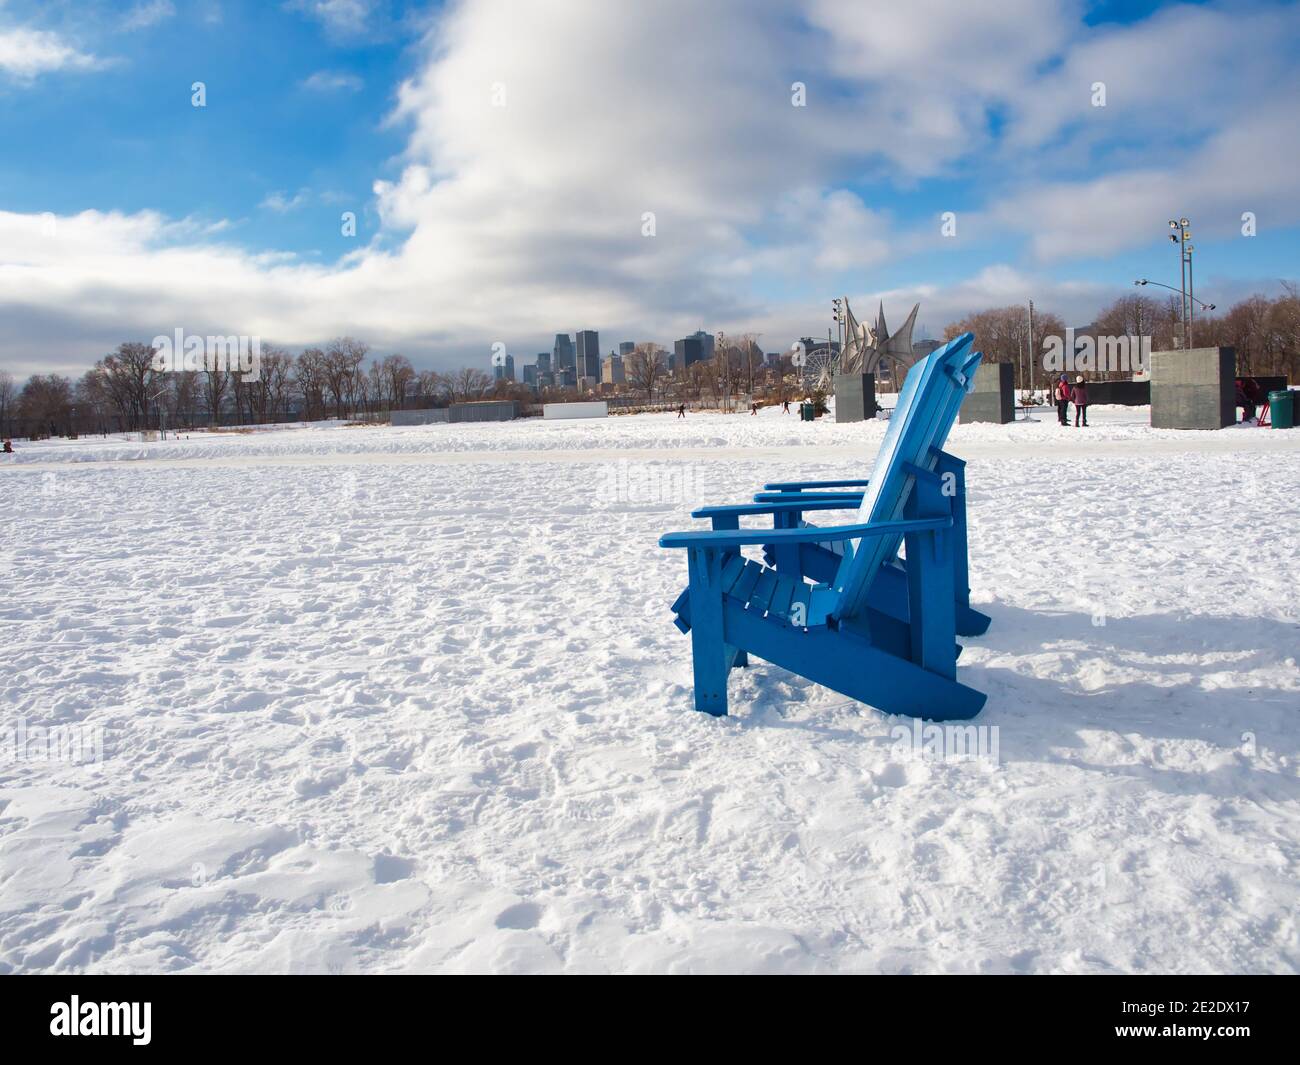 Le 09 janvier 2021 - Montréal, Canada chaises d'extérieur dans la neige au parc Jean-drapeau en hiver avec les édifices de Montréal en arrière-plan Banque D'Images